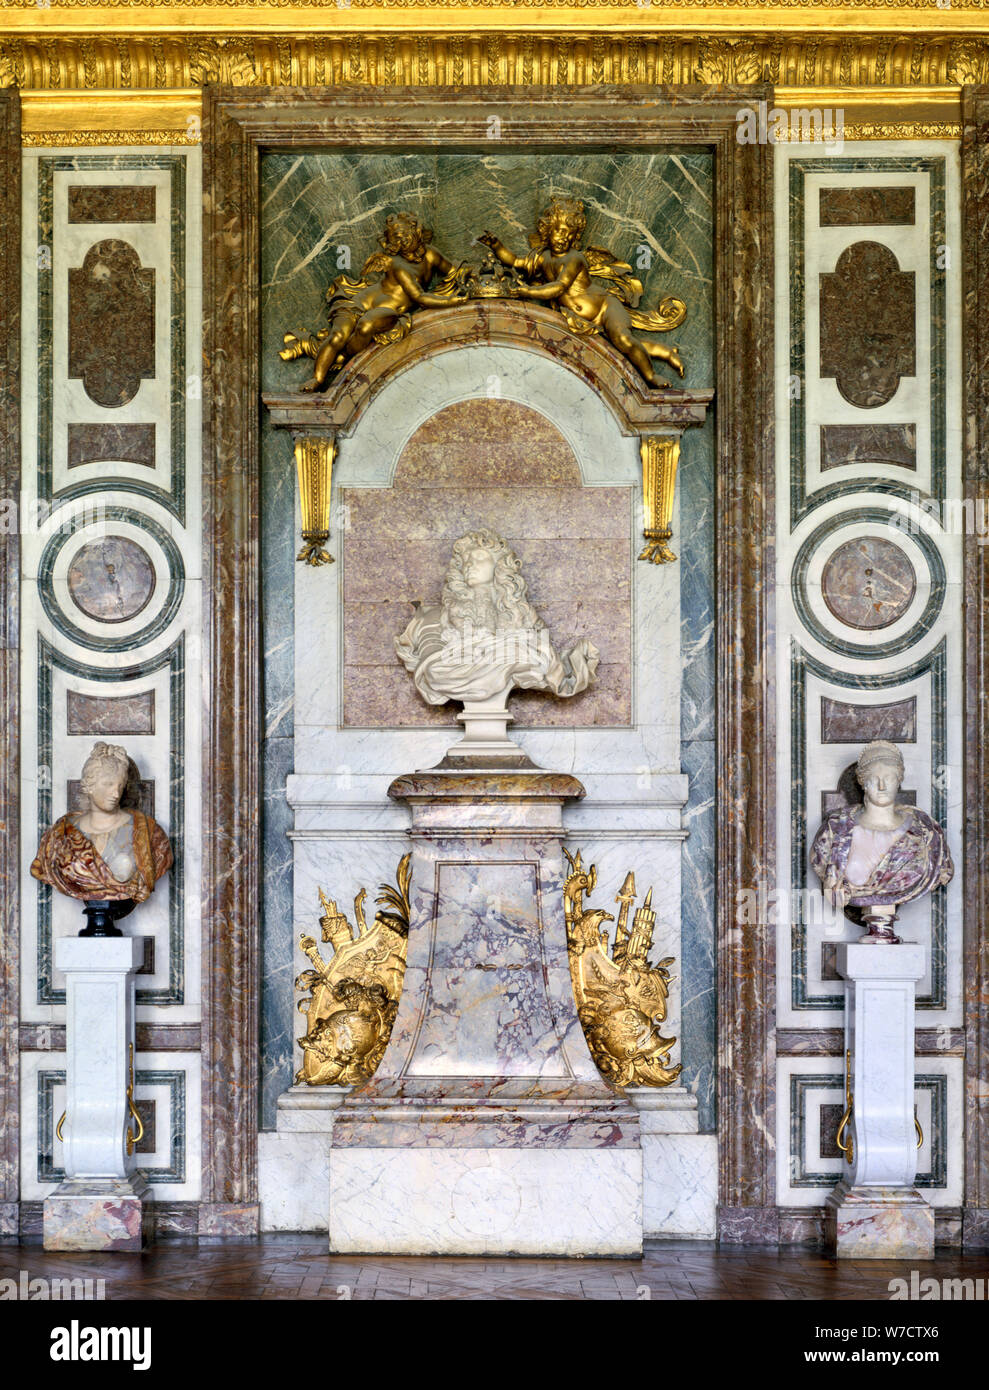 Buste de Louis XIV, Salon de Diane, Grand Appartement, Château de Versailles, France, 17e siècle. Artiste : Gian Lorenzo Bernini Banque D'Images